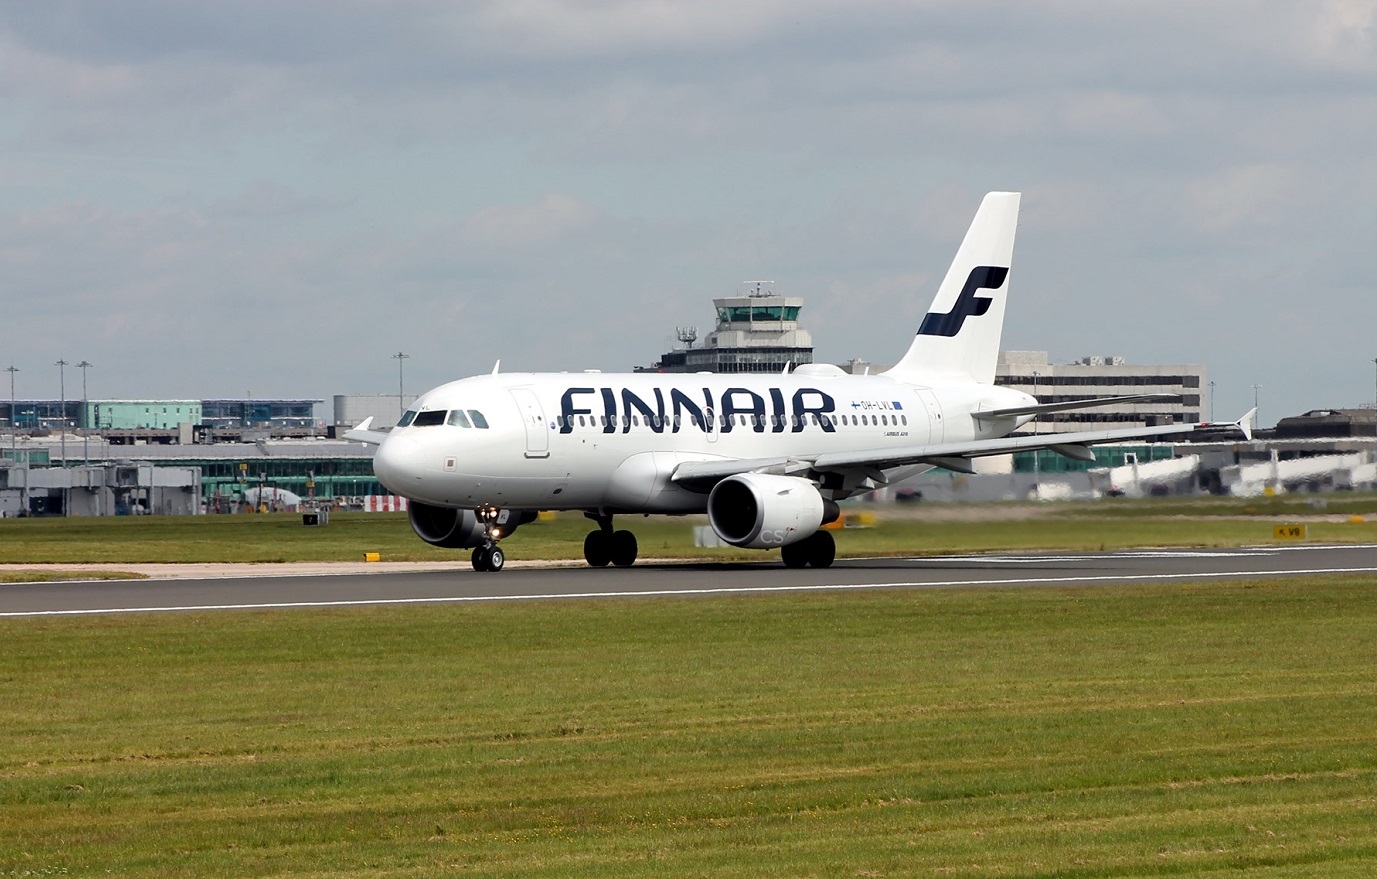 Η αεροπορική εταιρεία Finnair αναστέλλει πτήσεις της προς την Εσθονία λόγω παρεμβολών στο GPS